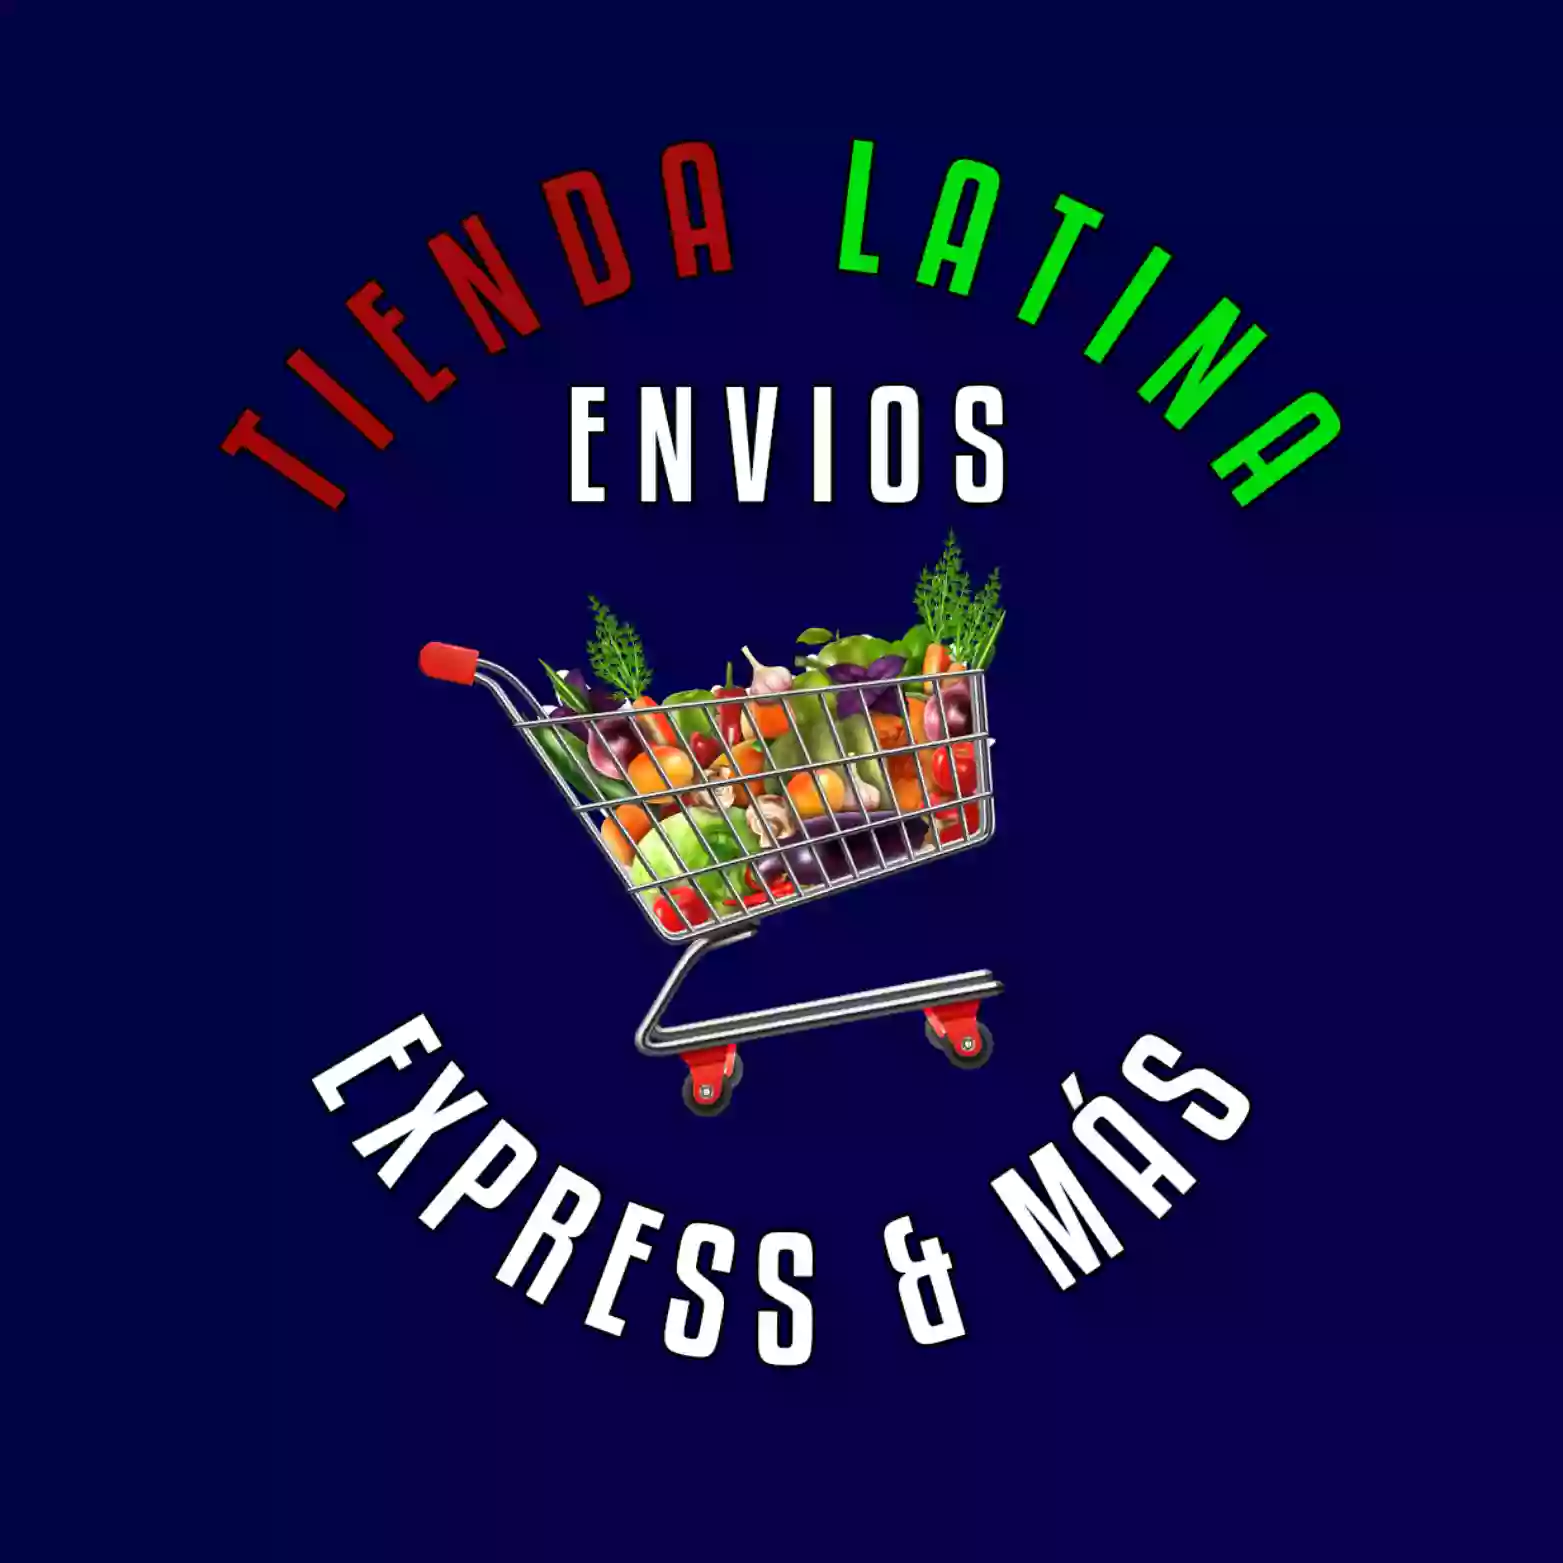 Envíos Express & Más Tienda Latina